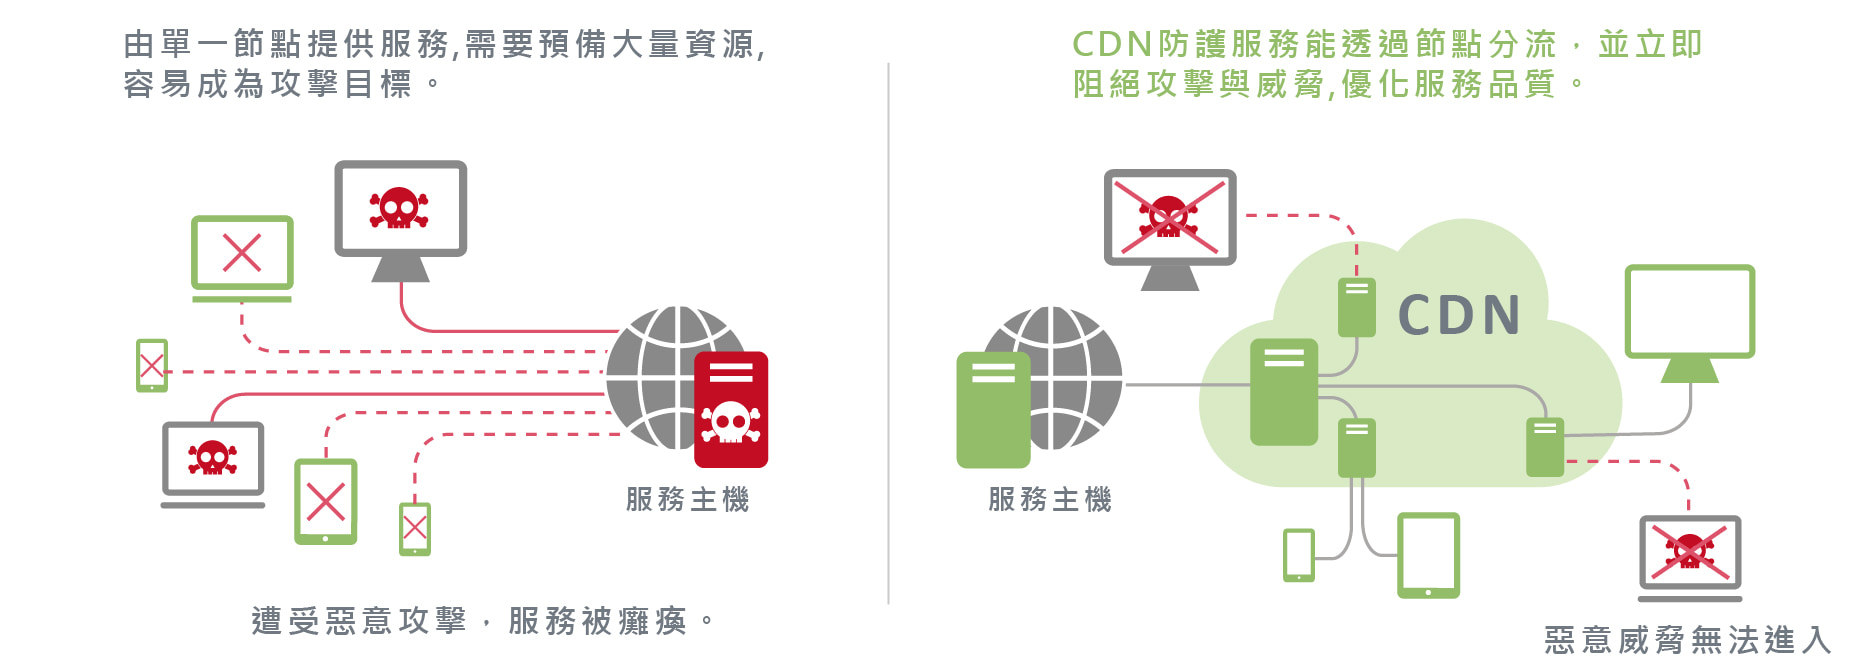 CDN防護 數位通國際